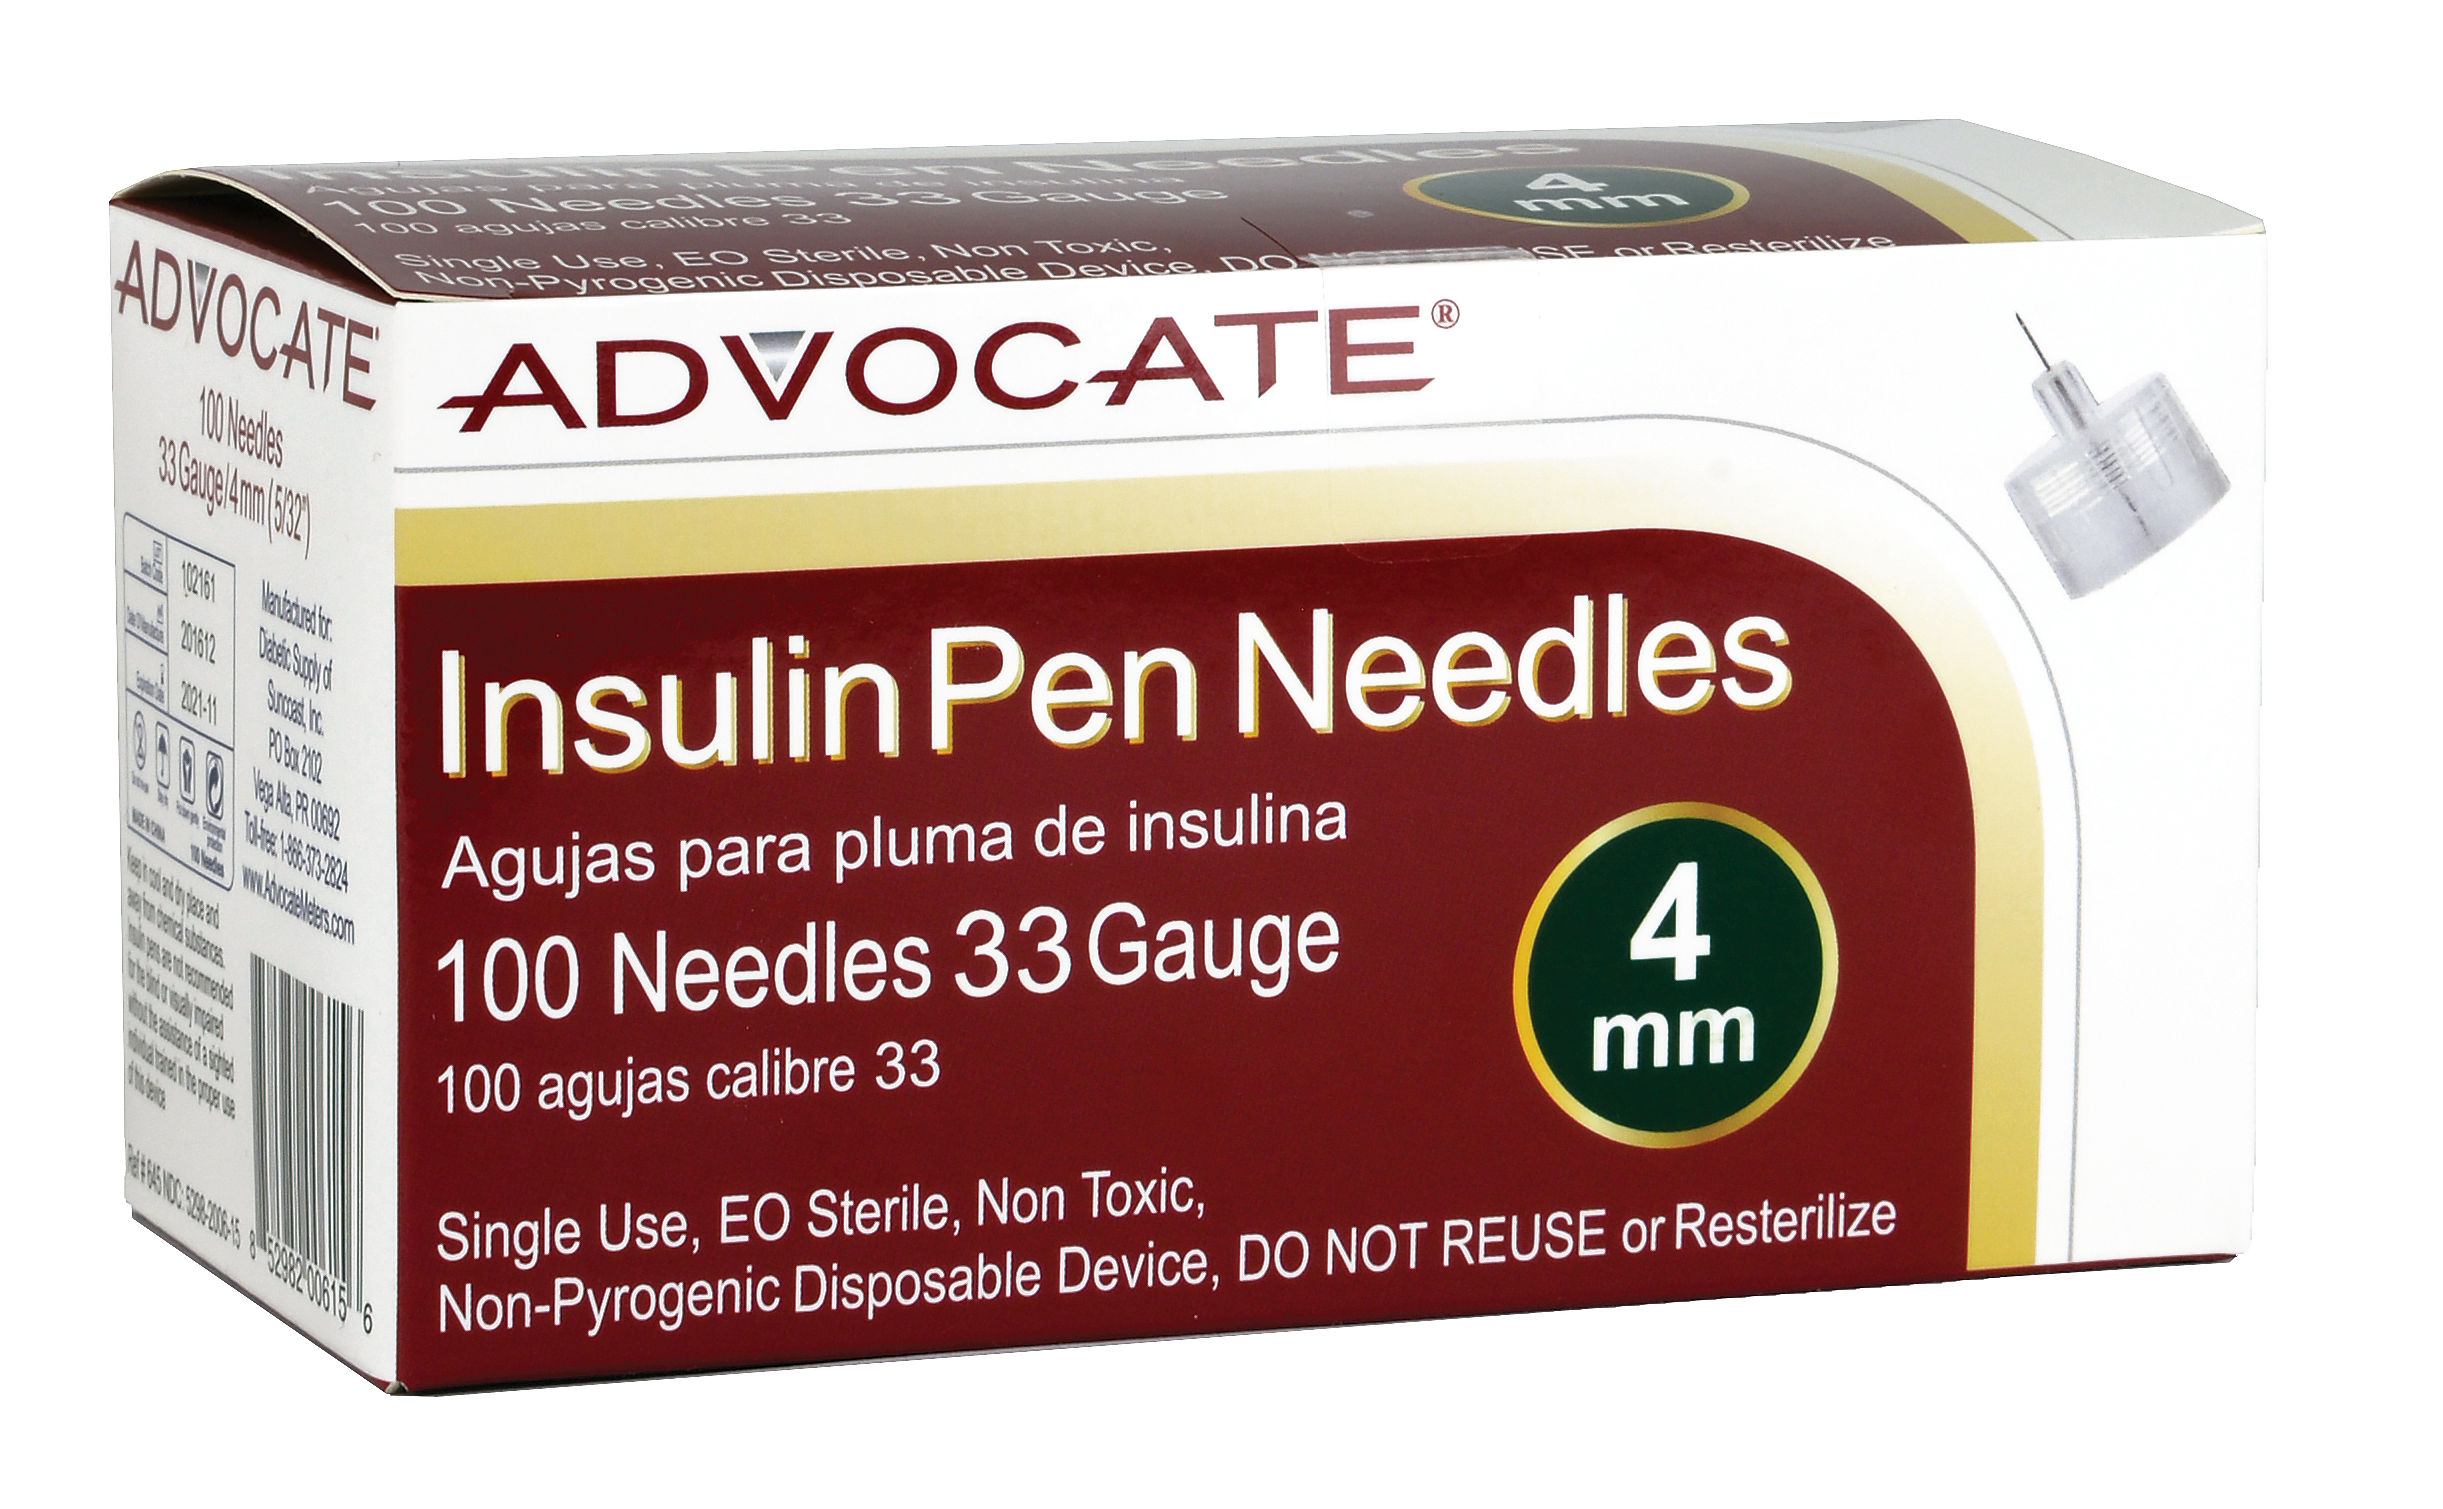 Clever Choice Comfort EZ Insulin Pen Needles - 33G 4mm 100/bx